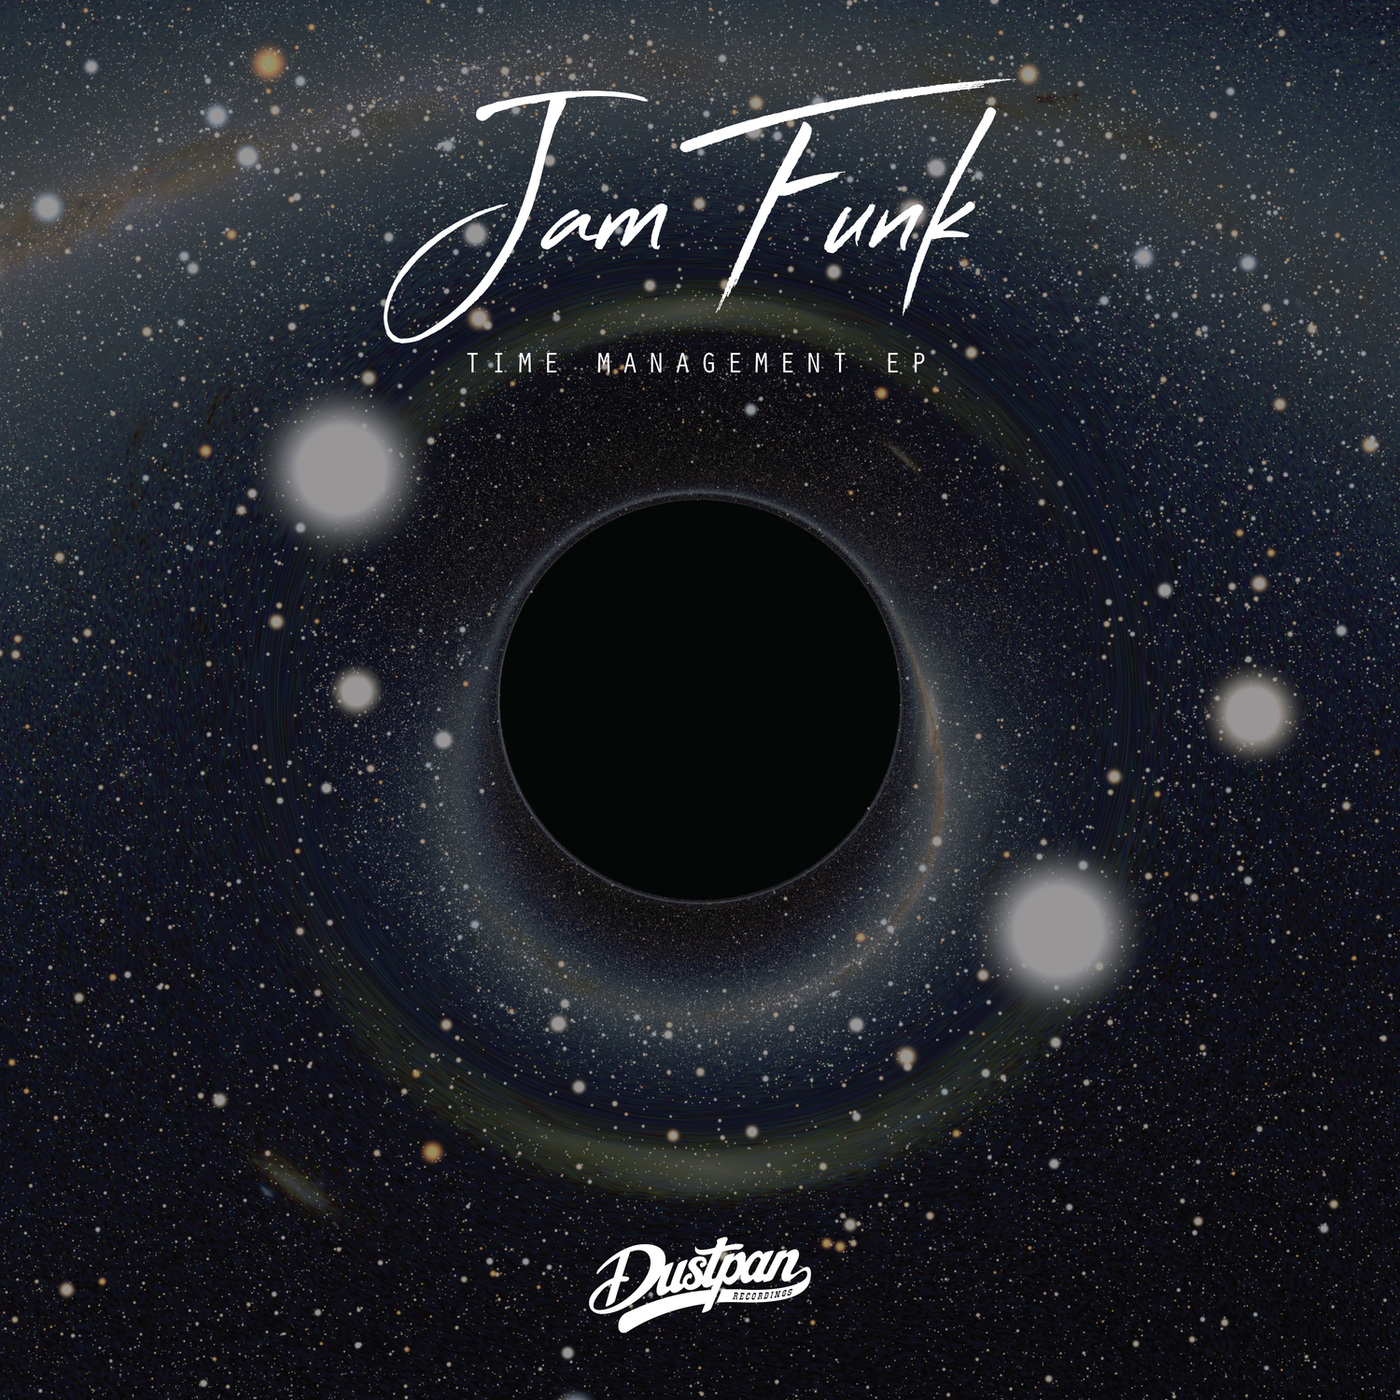 Jam Funk - Time Management EP / Dustpan Recordings